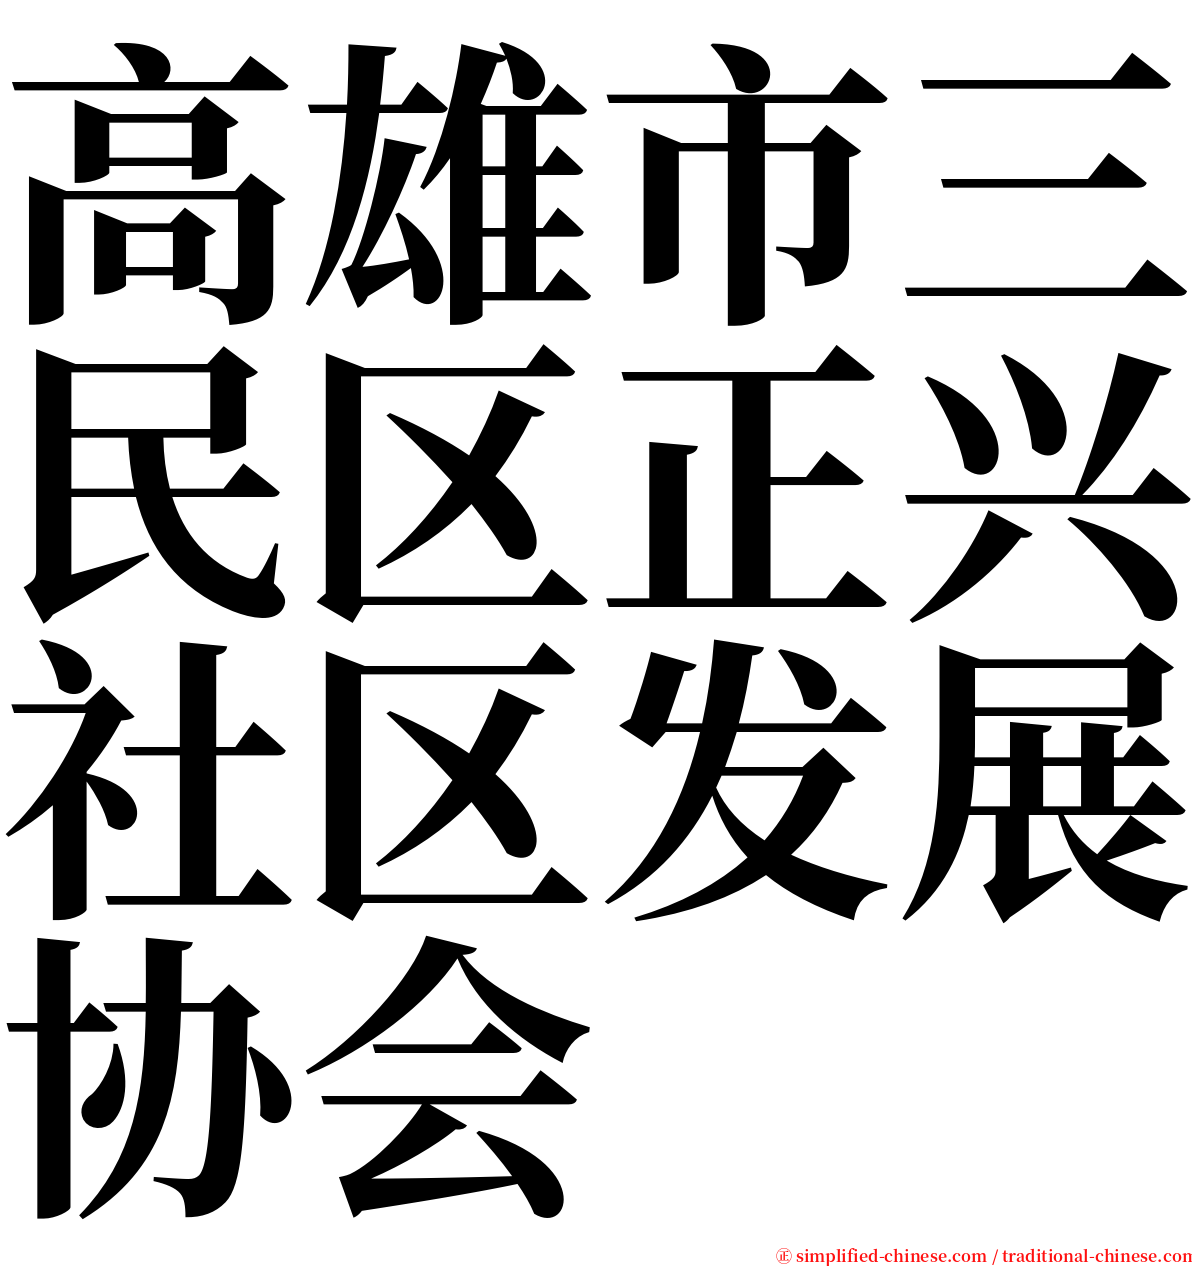 高雄市三民区正兴社区发展协会 serif font